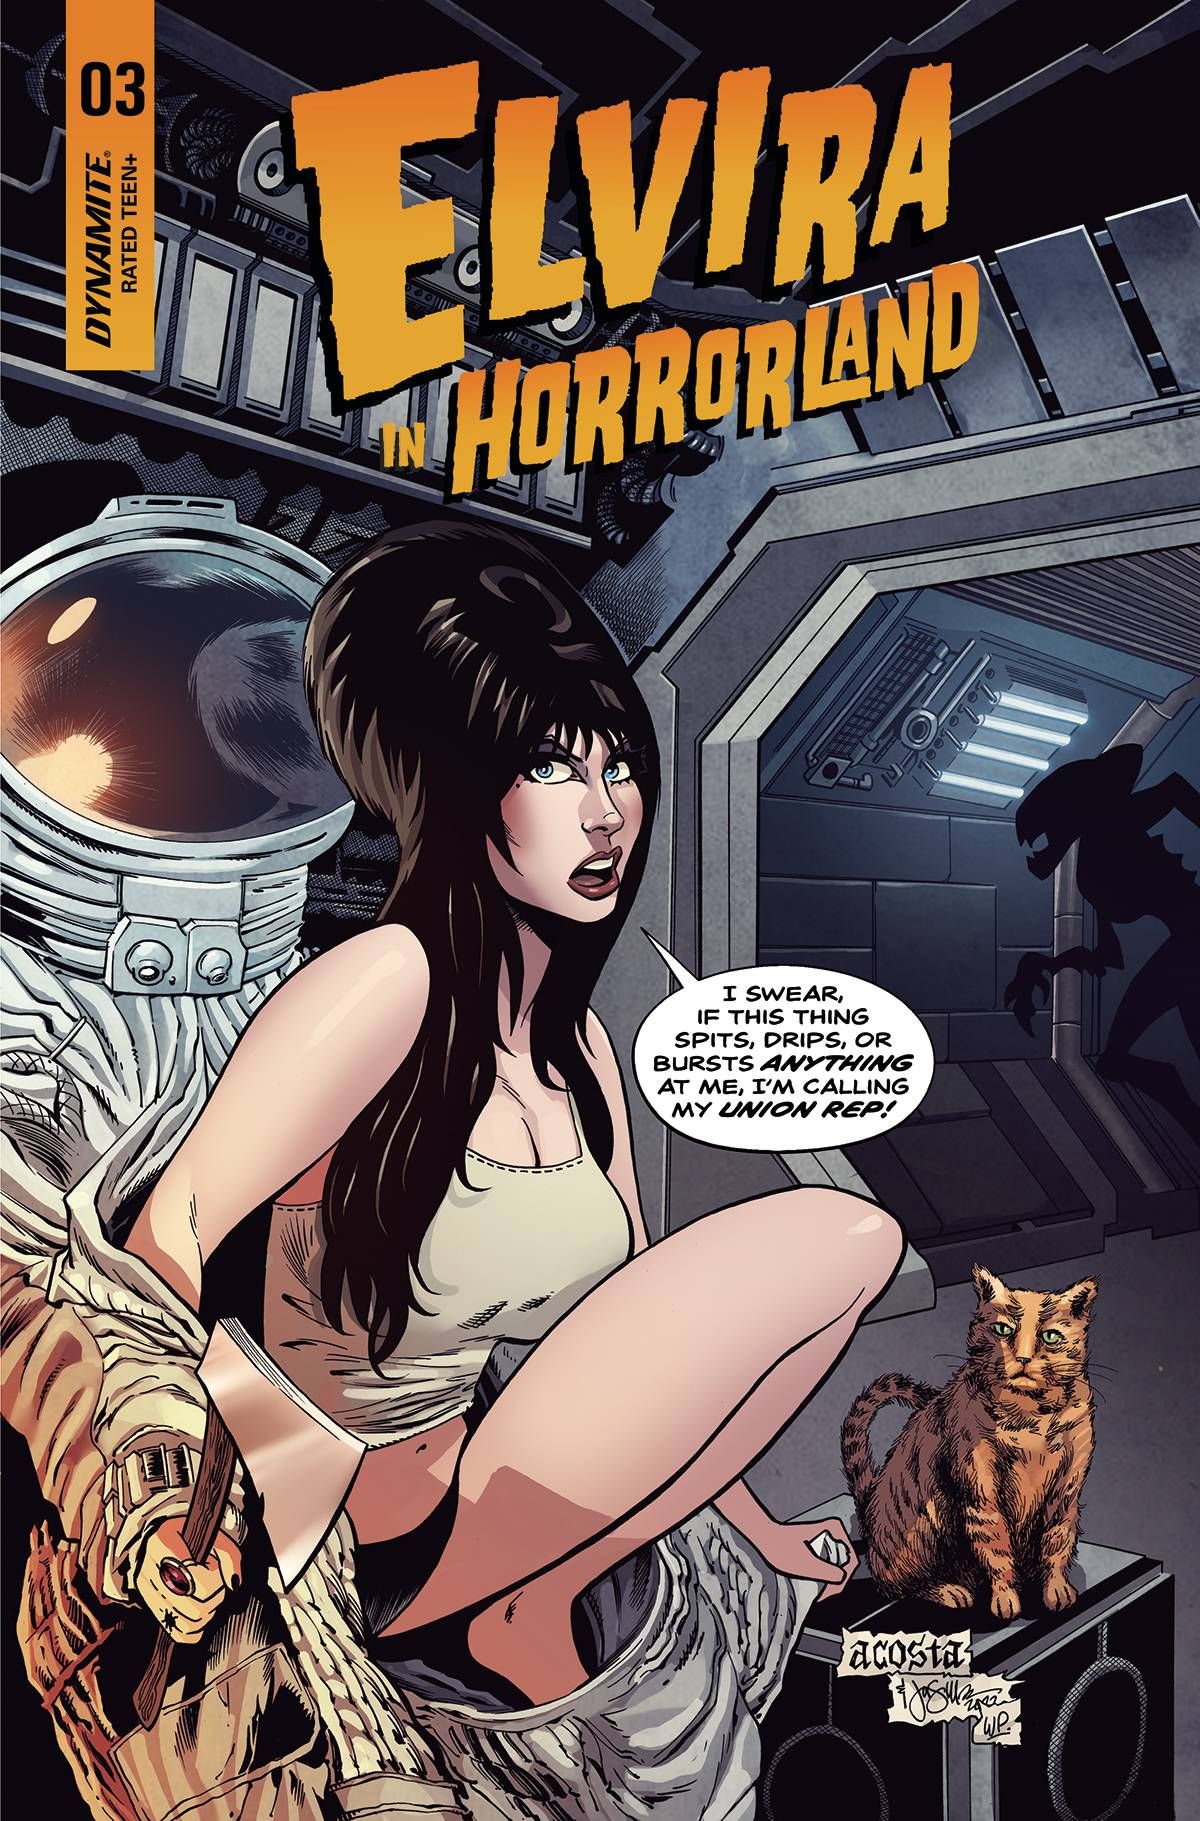 Elvira In Horrorland #3 Comic